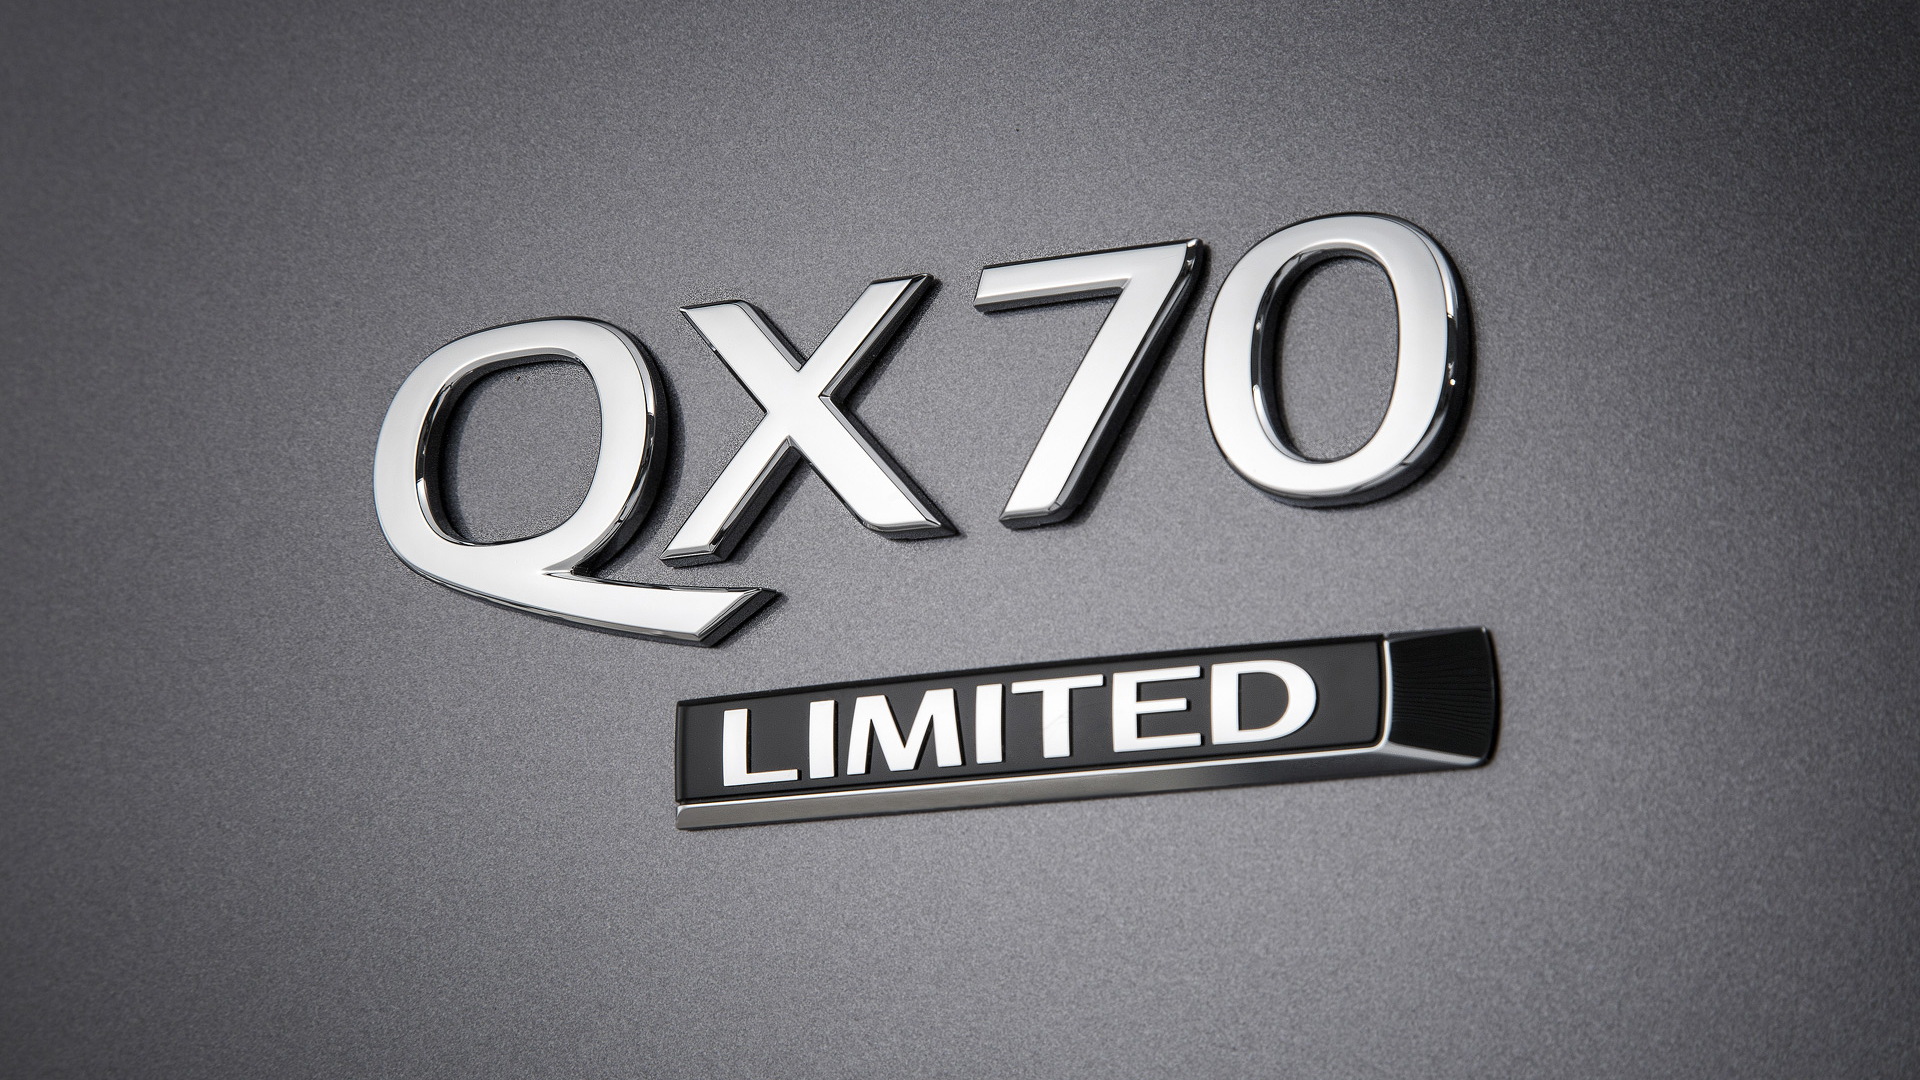 2017 Infiniti QX70 Limited